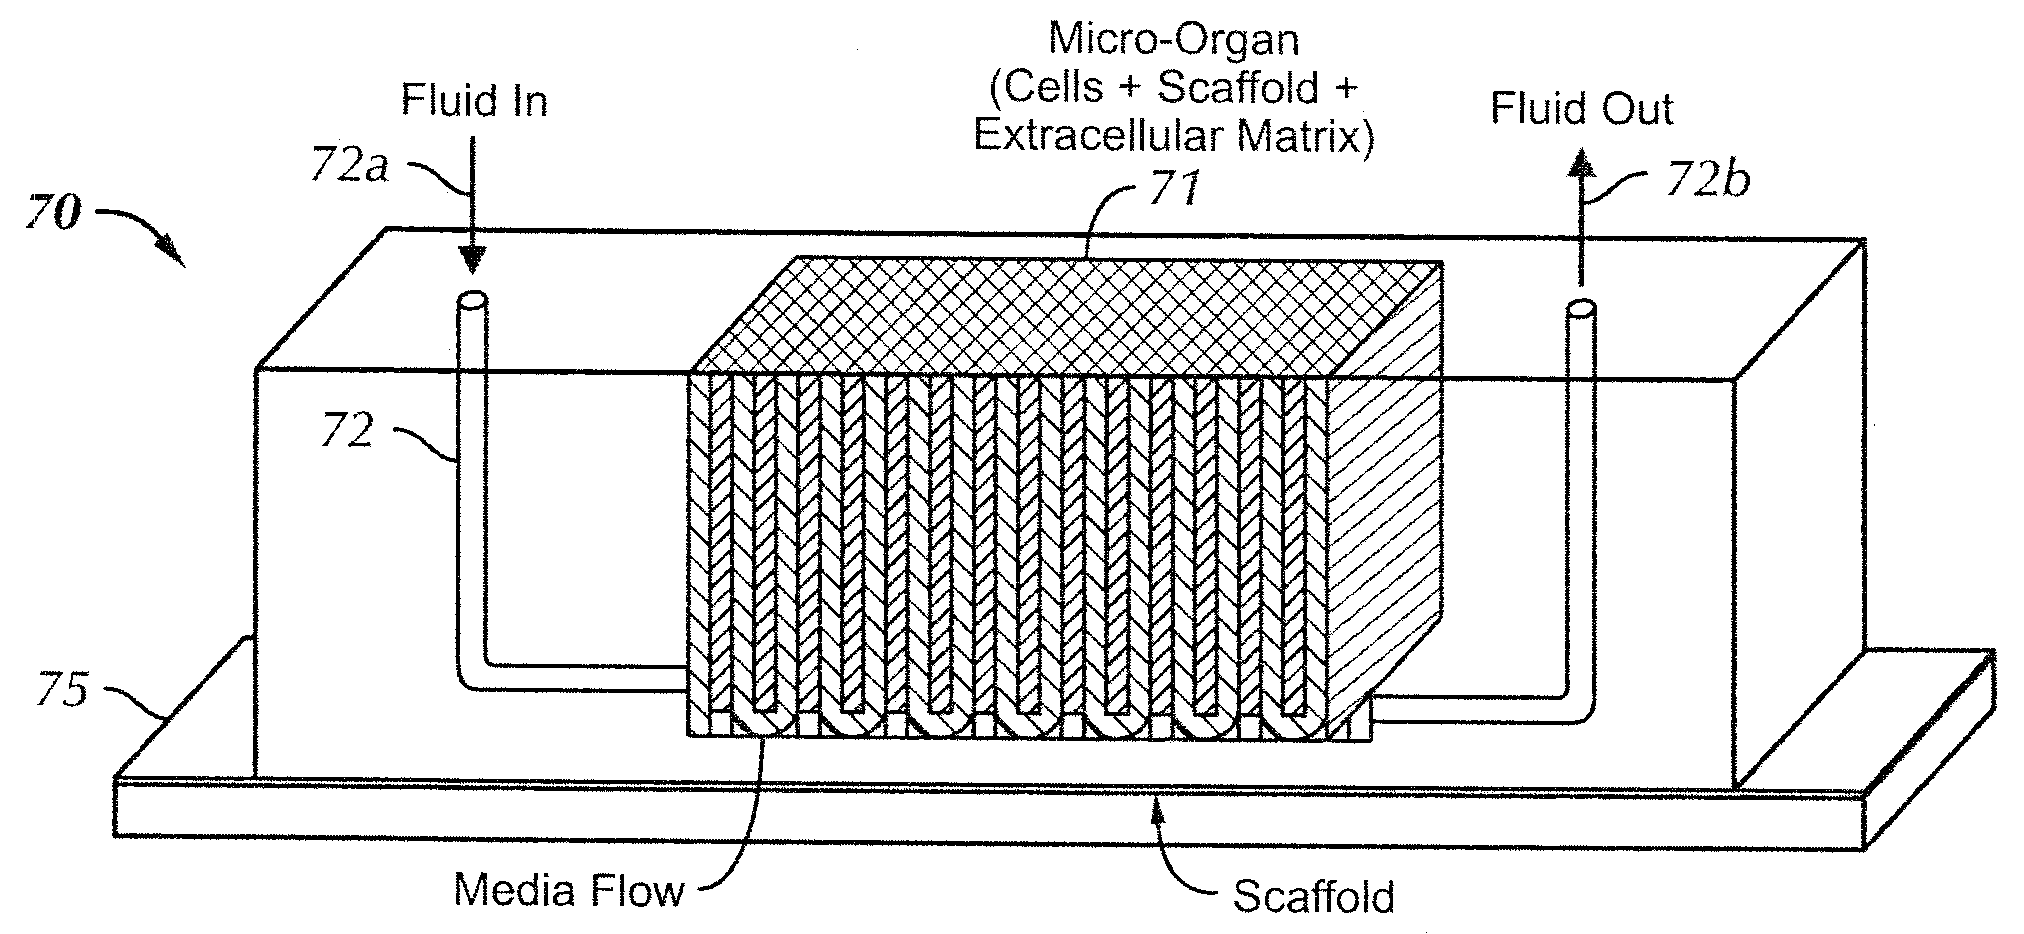 Micro-Organ Device